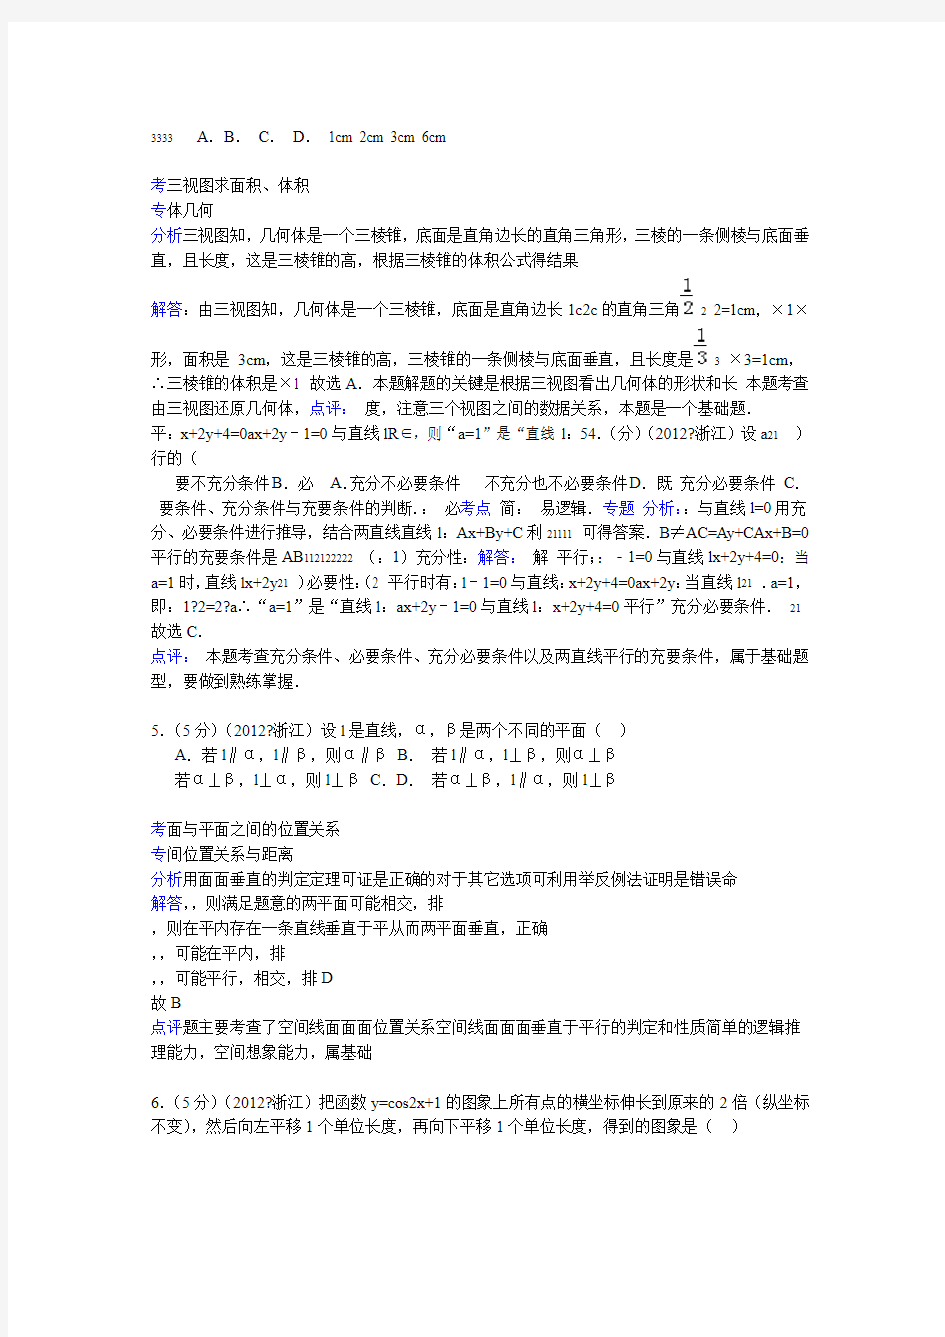 2012年浙江省高考数学试卷文科答案与解析